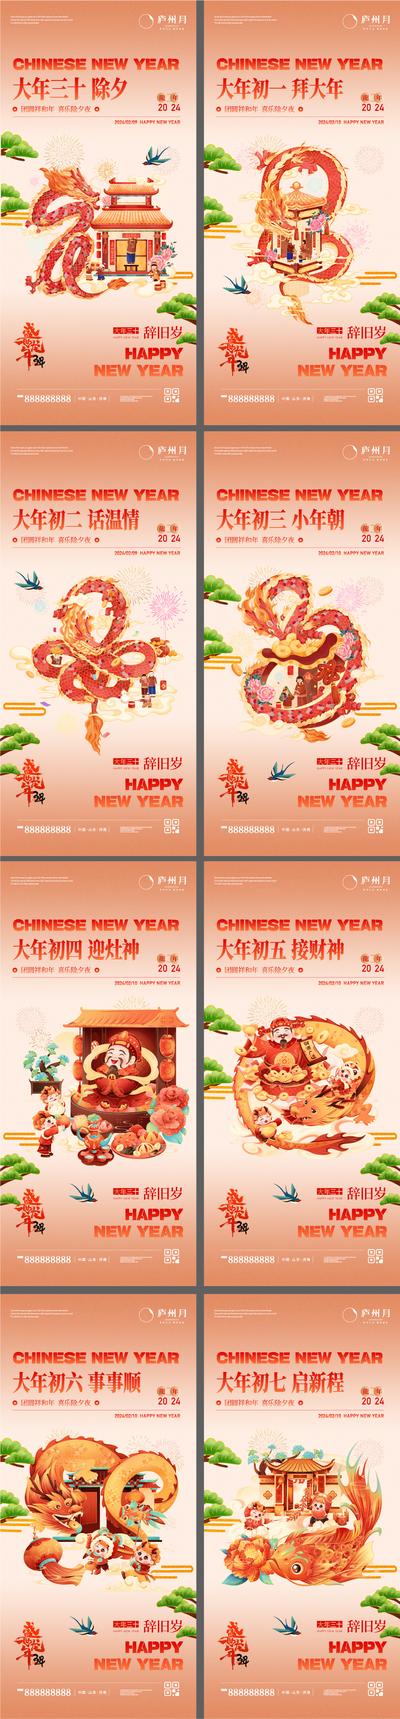 南门网 广告 海报 新年 春节 初一 大年初一 初七 年俗 年味 系列 插画 手绘